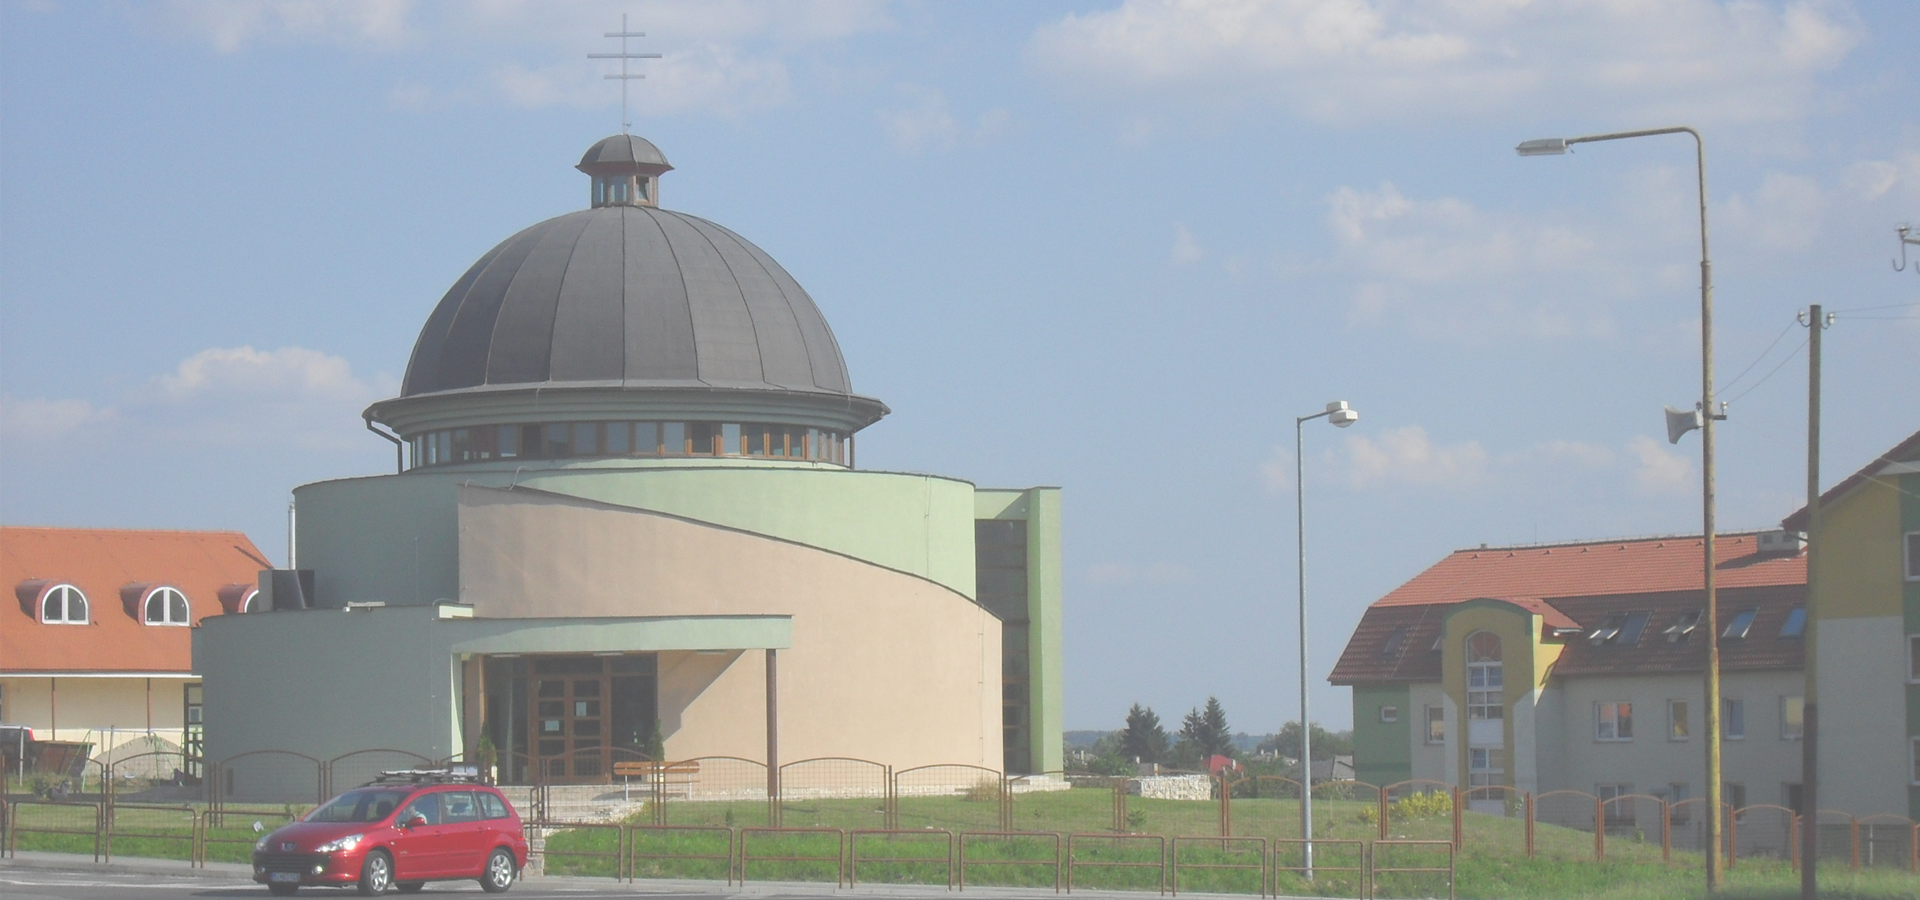 <b>Veľké Kapušany, Košice Self-governing Region, Slovakia</b>